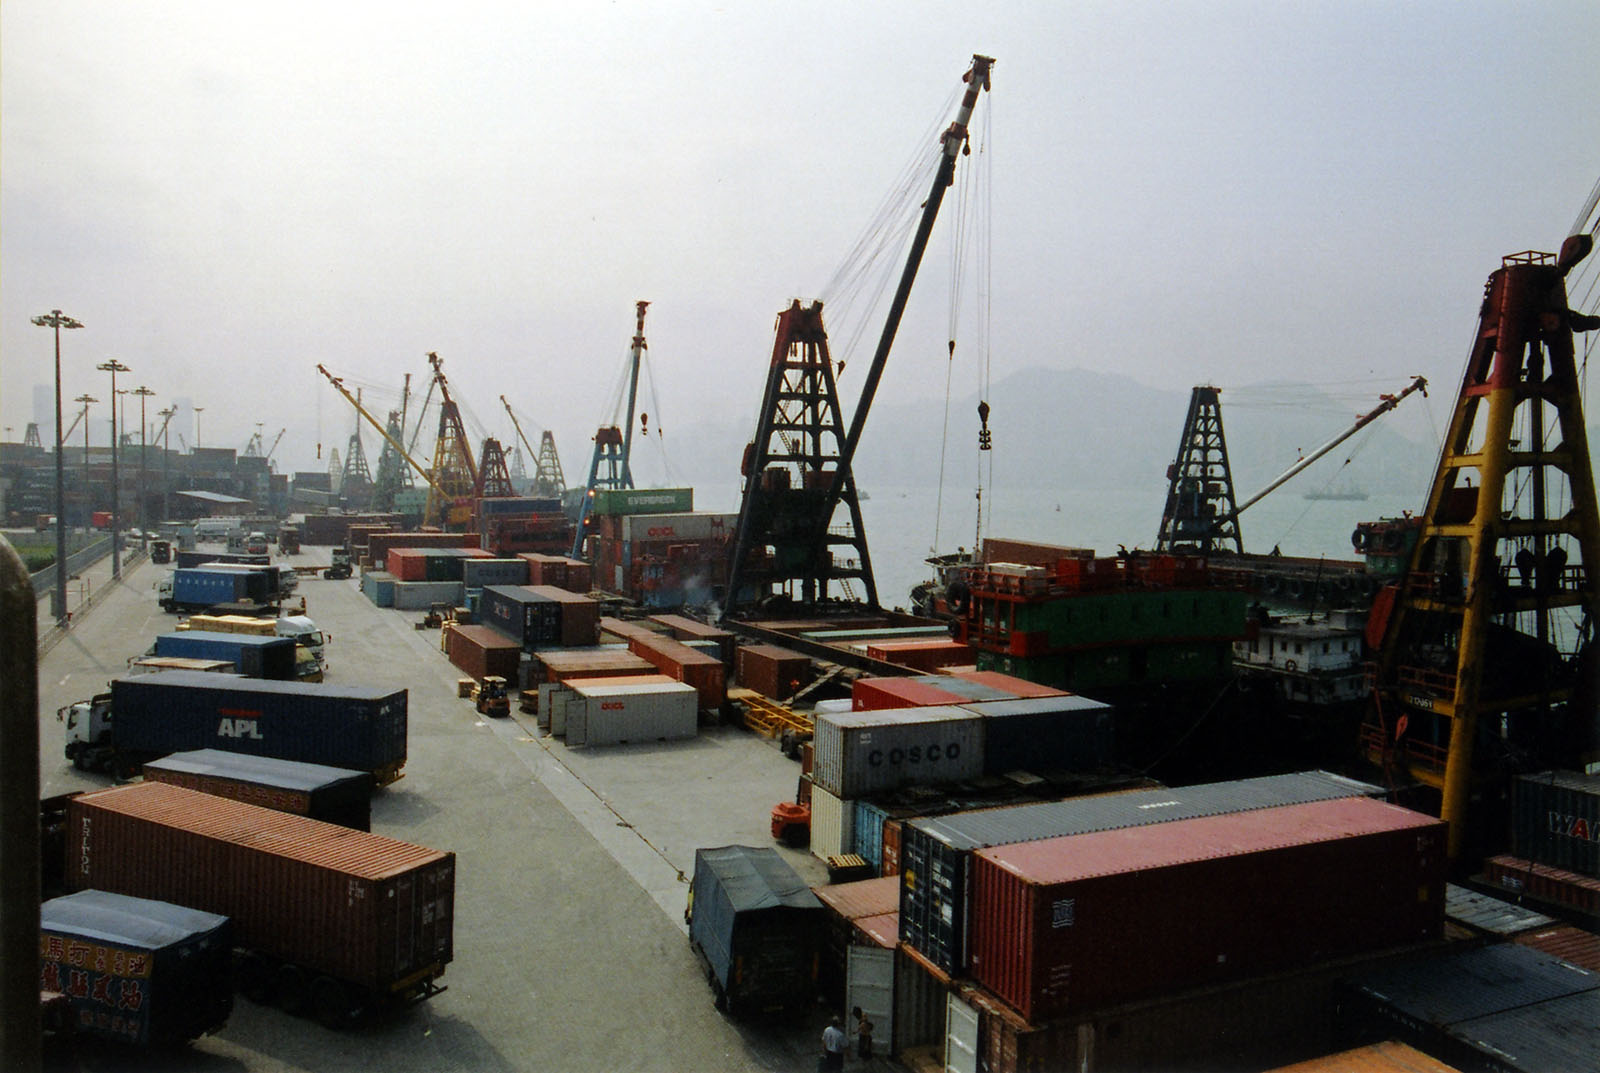 相片 1: 昂船洲公眾貨物裝卸區